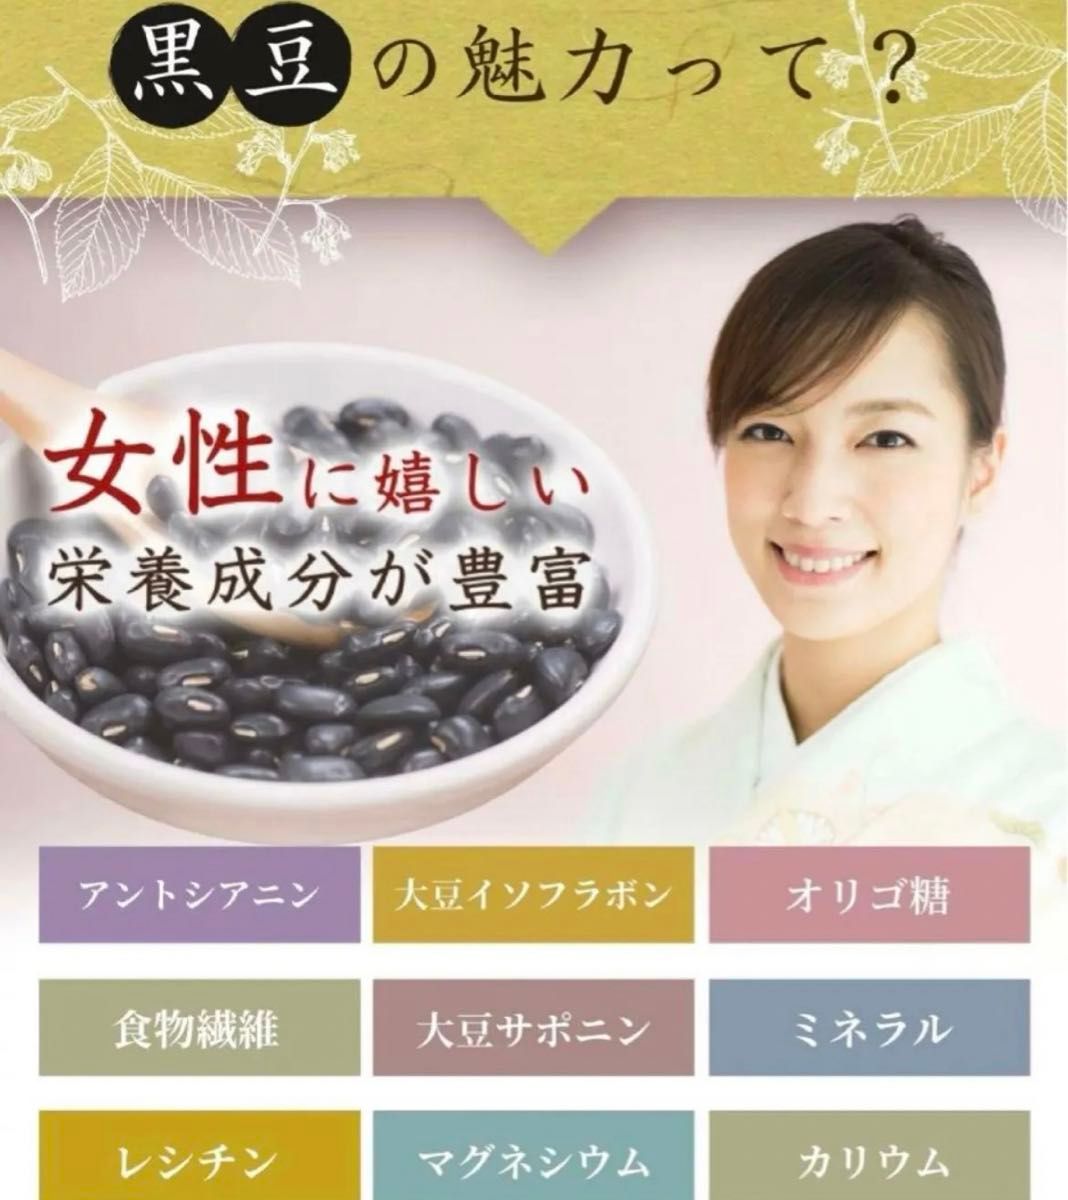 黒豆茶 北海道産 ティーバッグ ノンカフェイン 320g (3.2g×100包) 国産 ティーパック クーポン利用 お茶